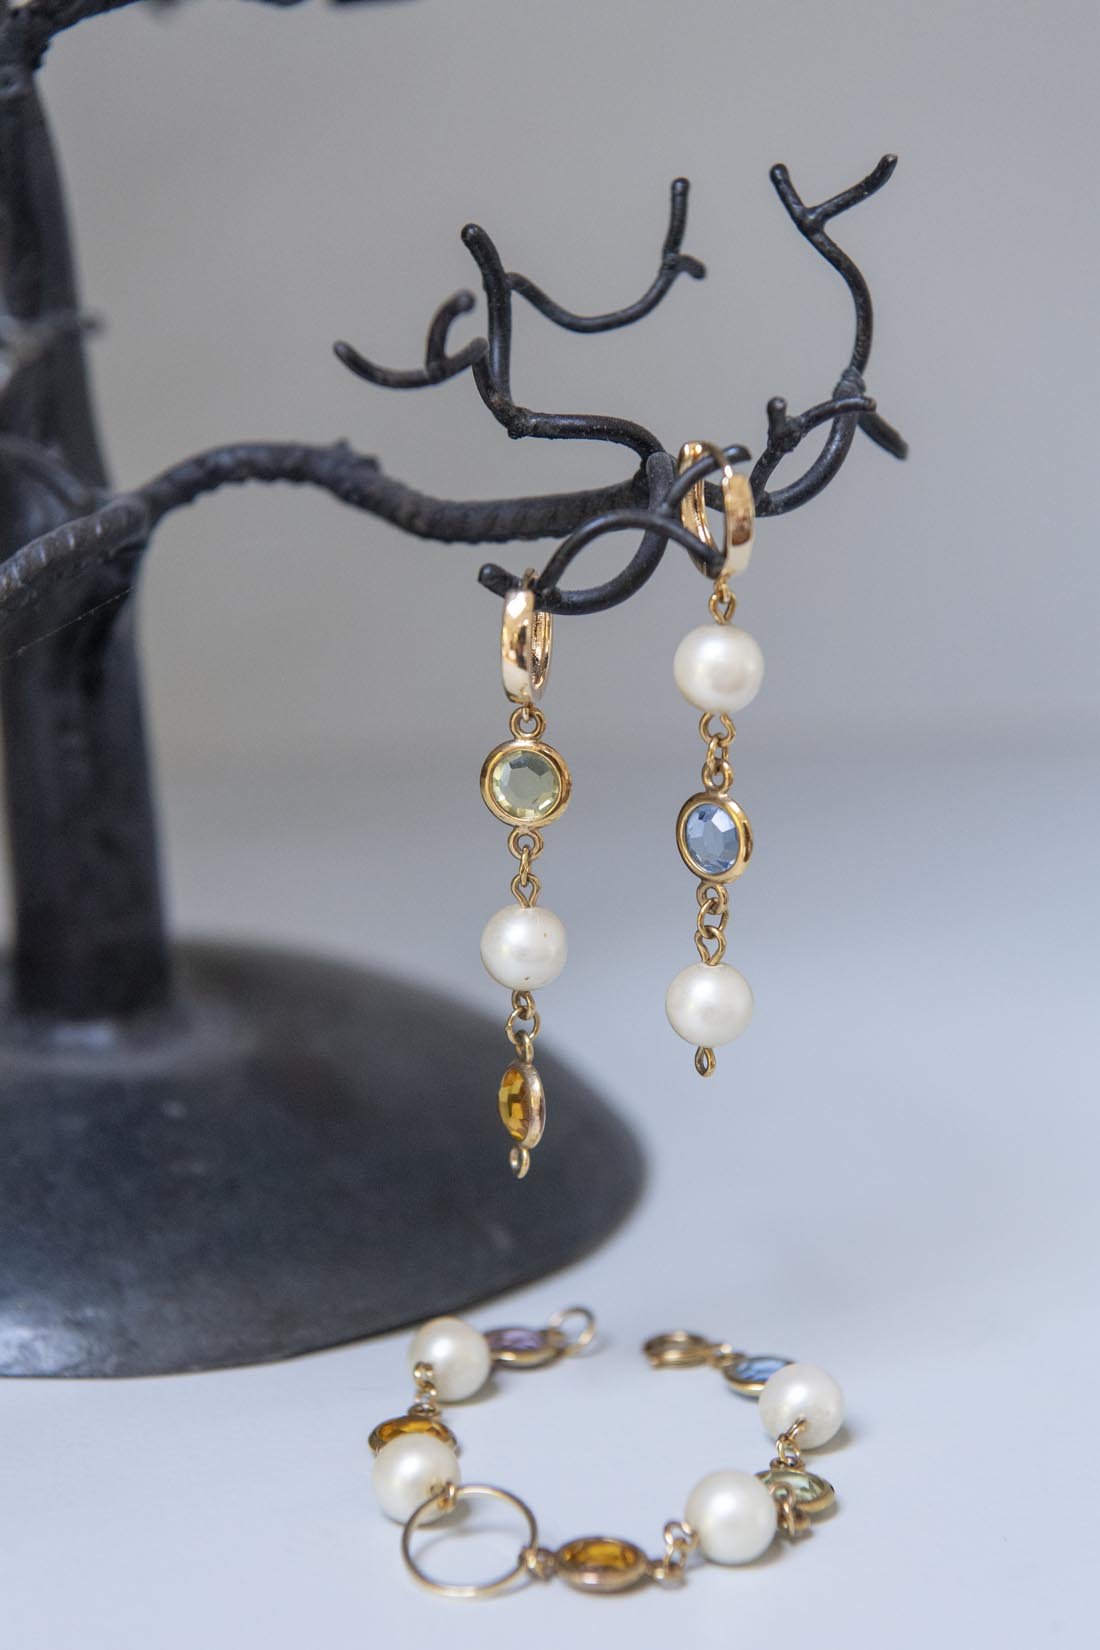 Crystal earrings and bracelet - Natalia Willmott